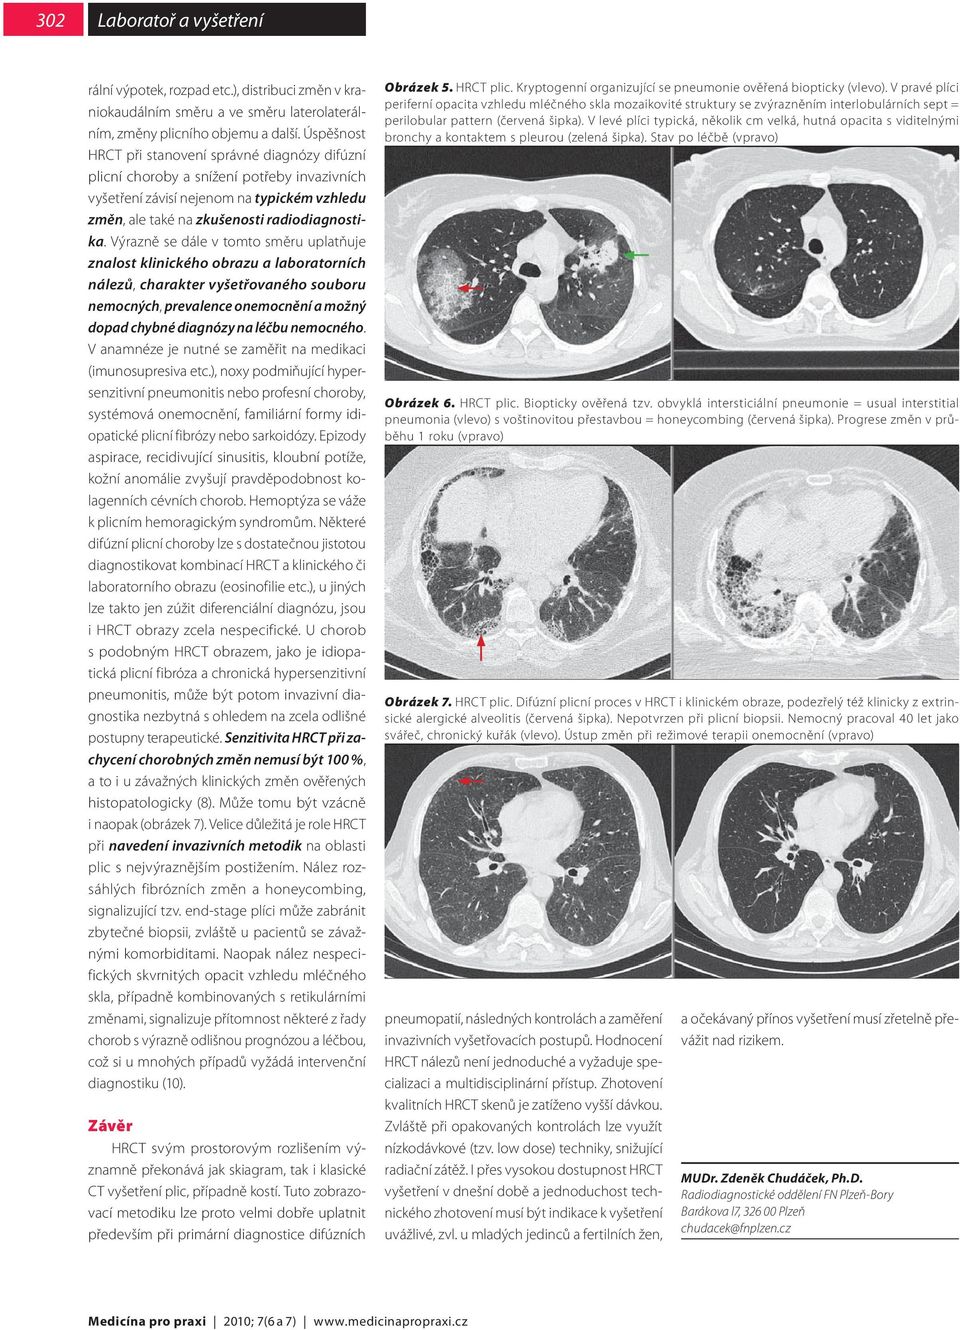 HRCT plic technika vyšetření, CT anatomie, základní typy patologických  nálezů - PDF Stažení zdarma